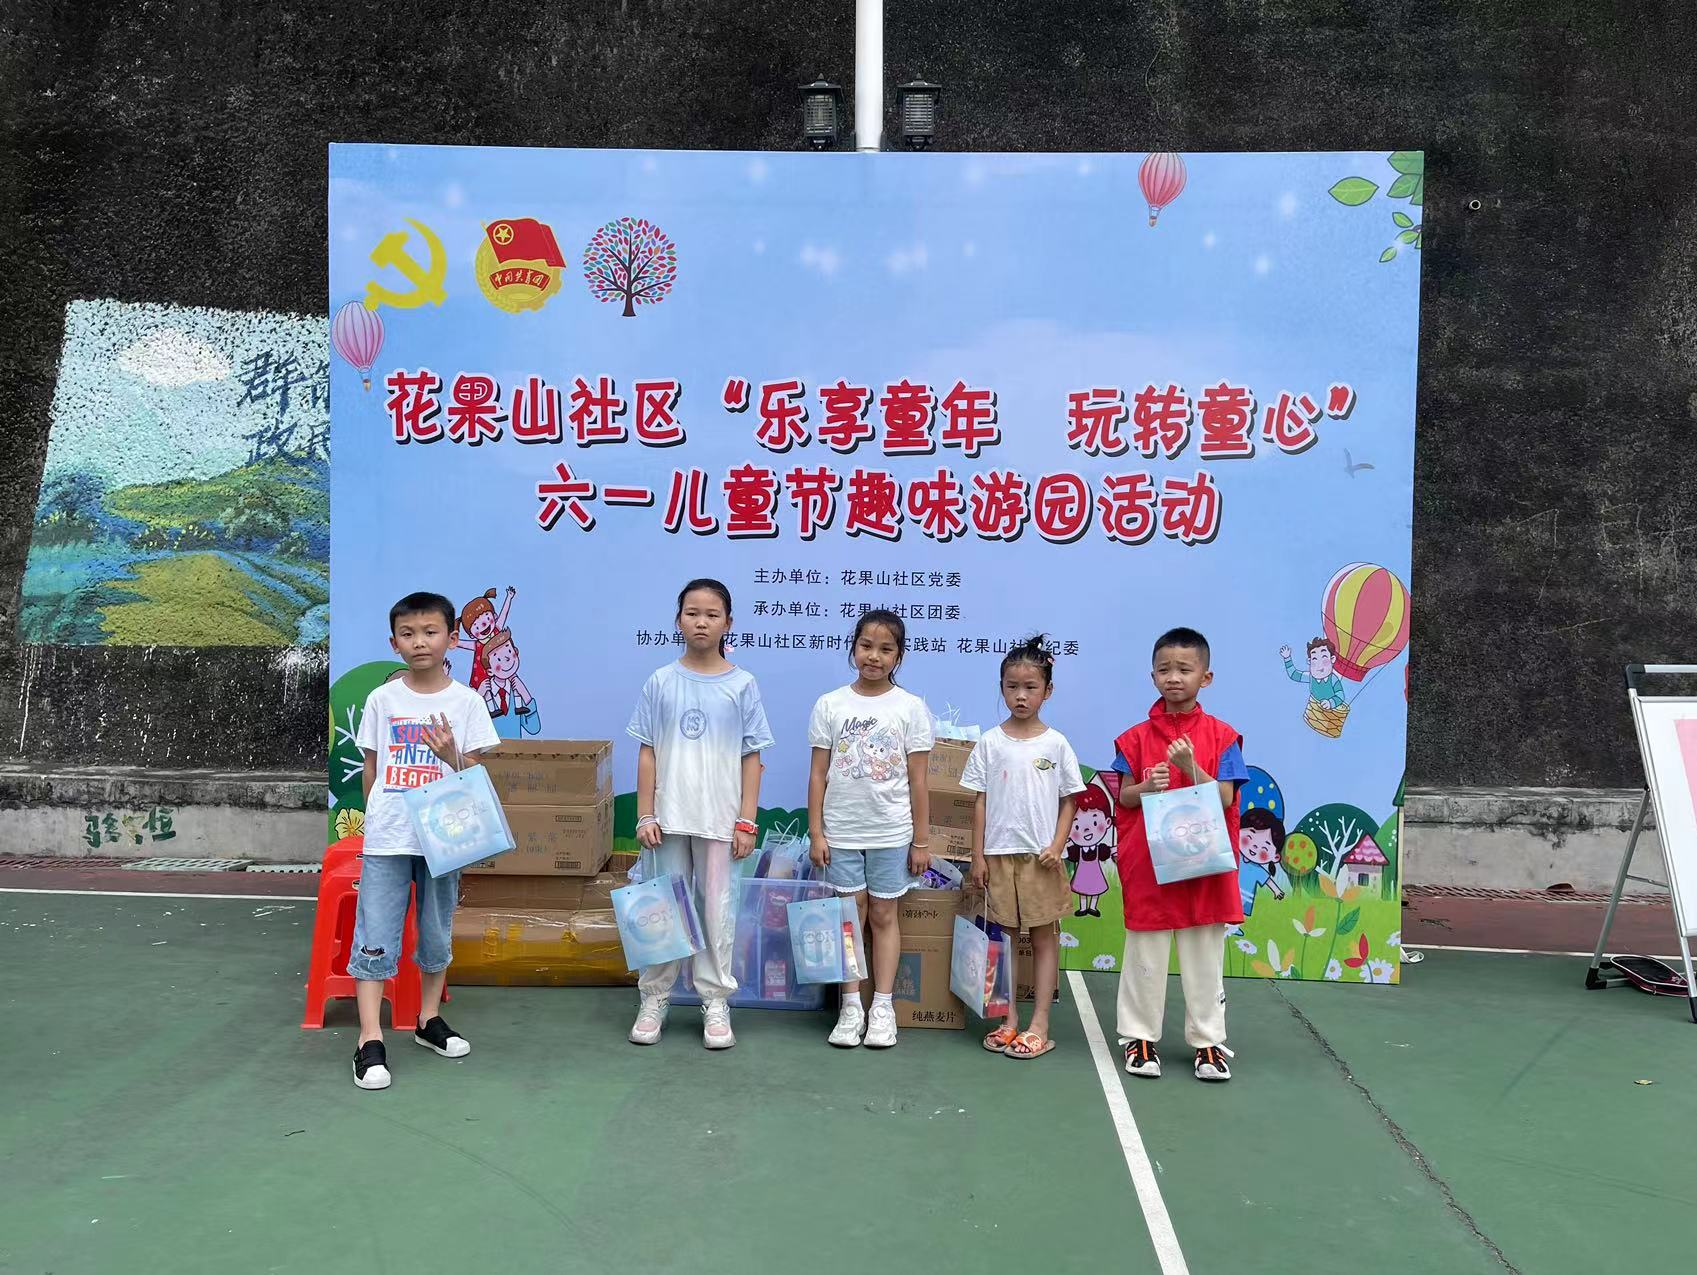 花果山社区开展“乐享童年 玩转童心” 六一儿童节趣味游园活动